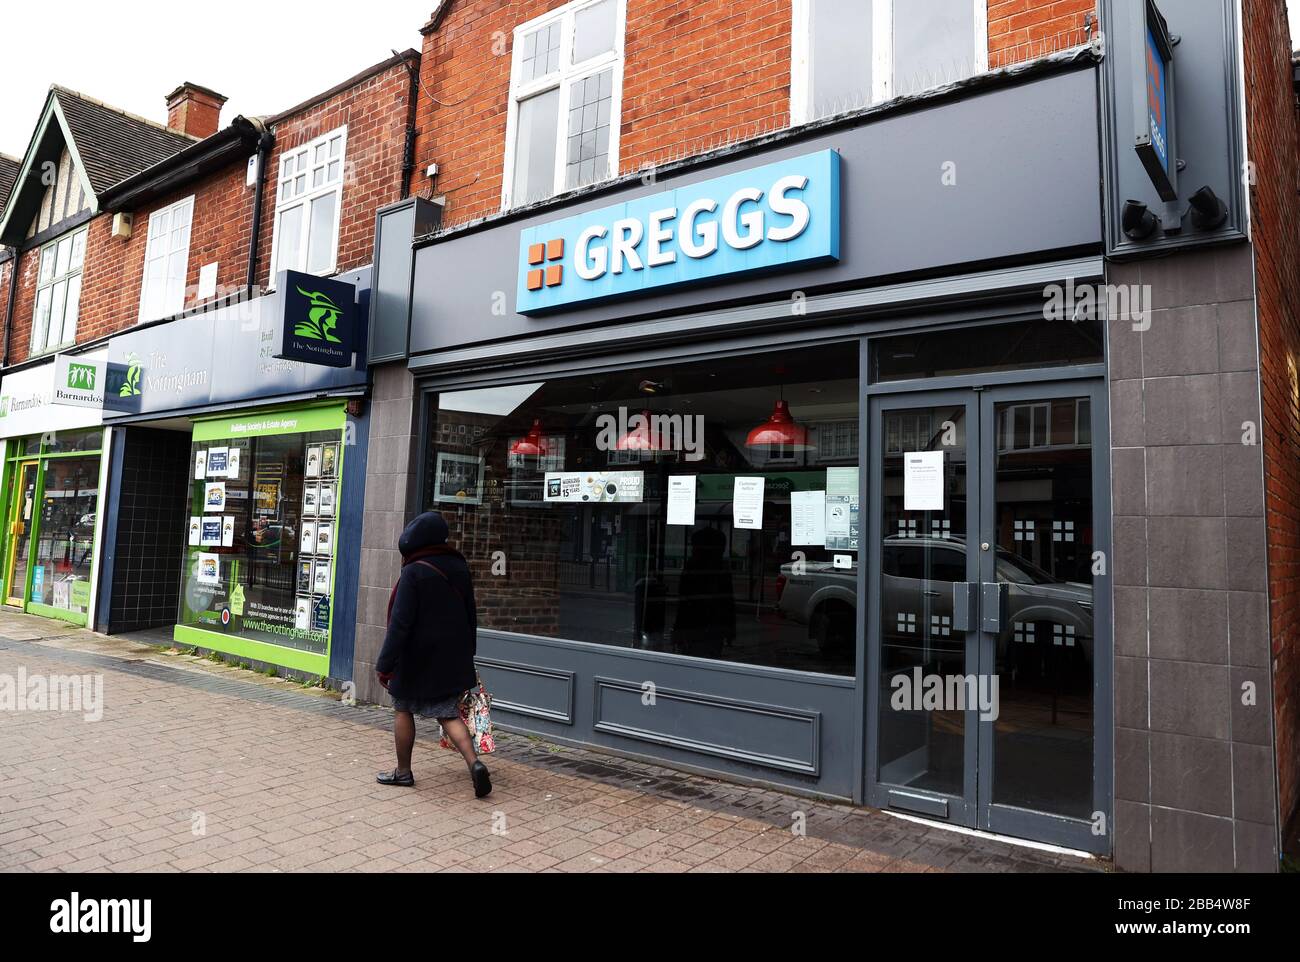 Signalisation à l'extérieur d'un magasin Greggs fermé à West Bridgford, Nottingham alors que le Royaume-Uni continue de se verrouiller pour aider à freiner la propagation du coronavirus. Banque D'Images